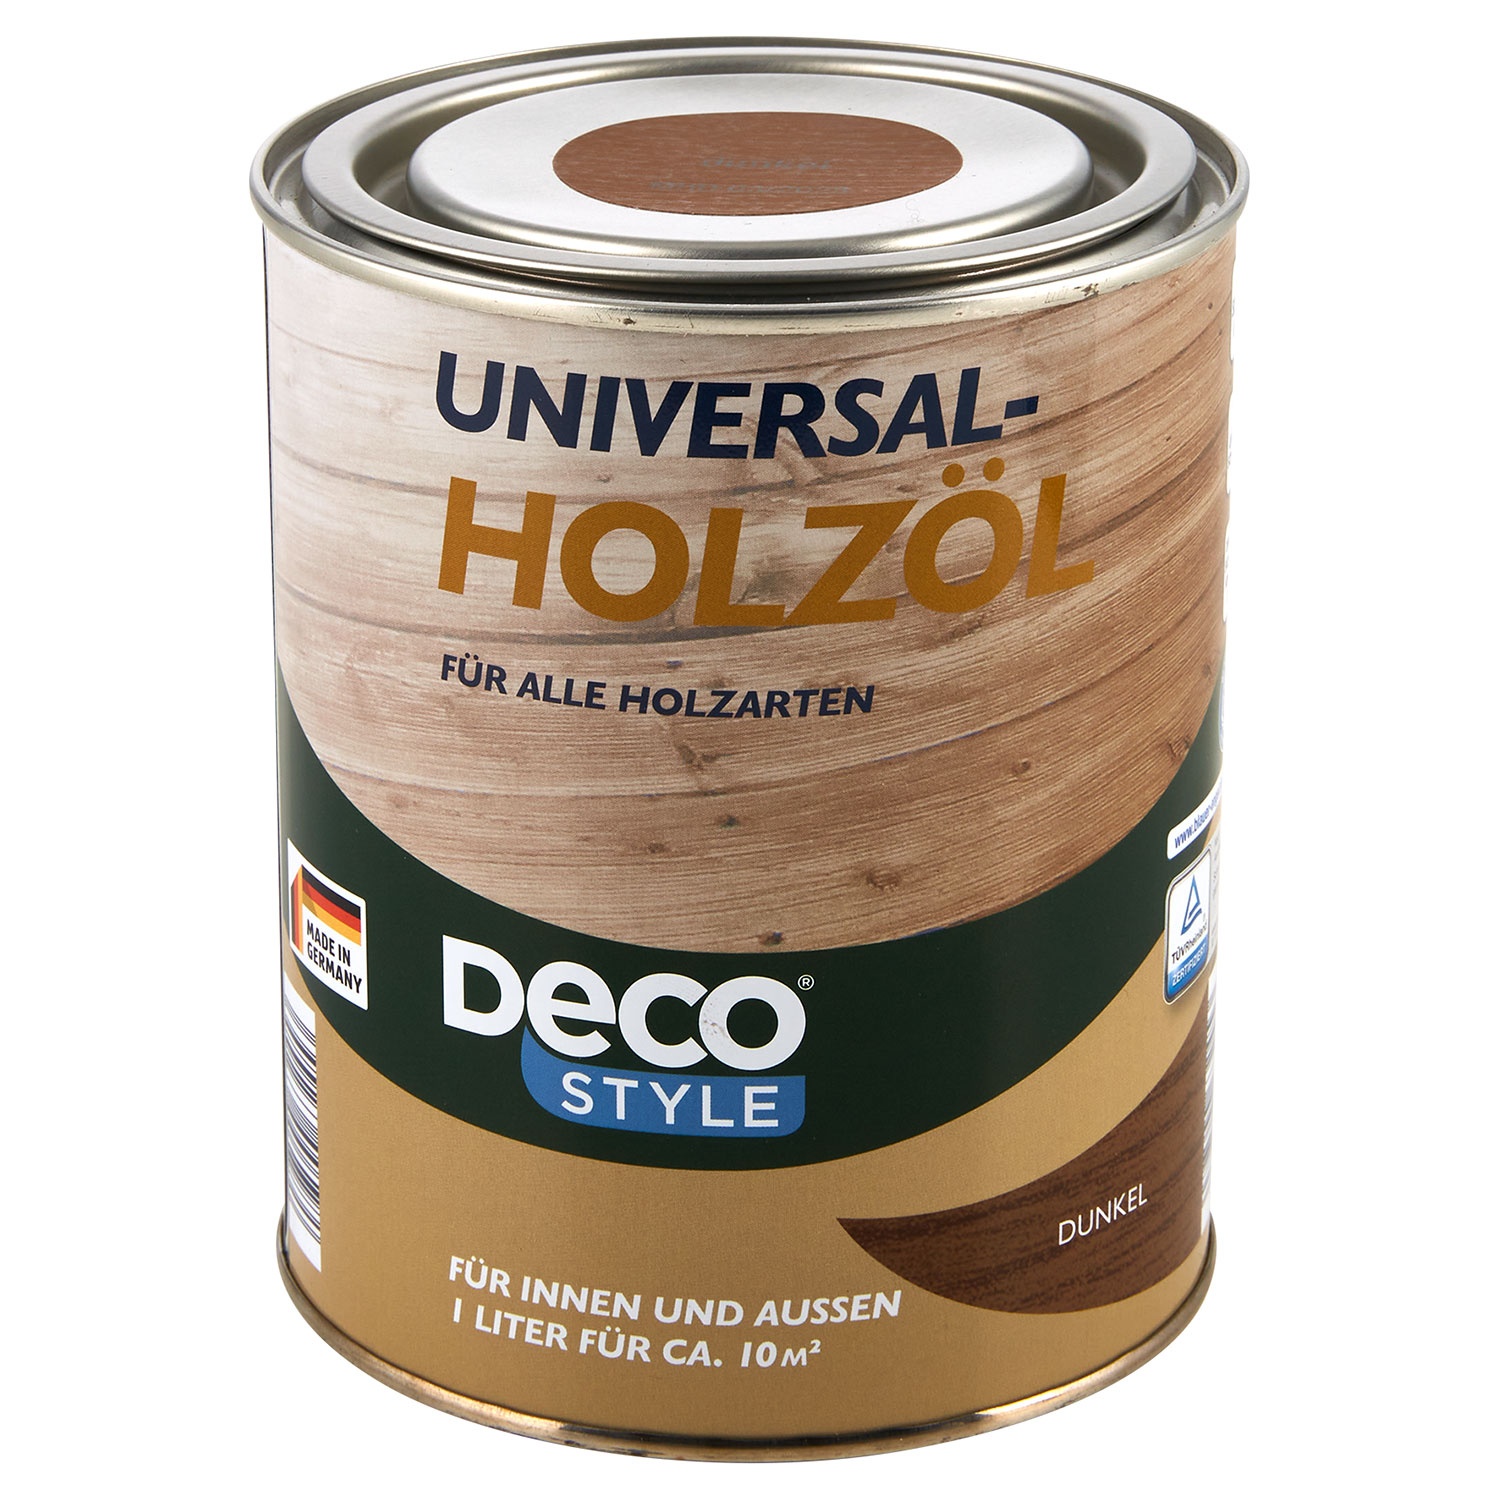 DECO STYLE® Universal-Holzöl 1 l